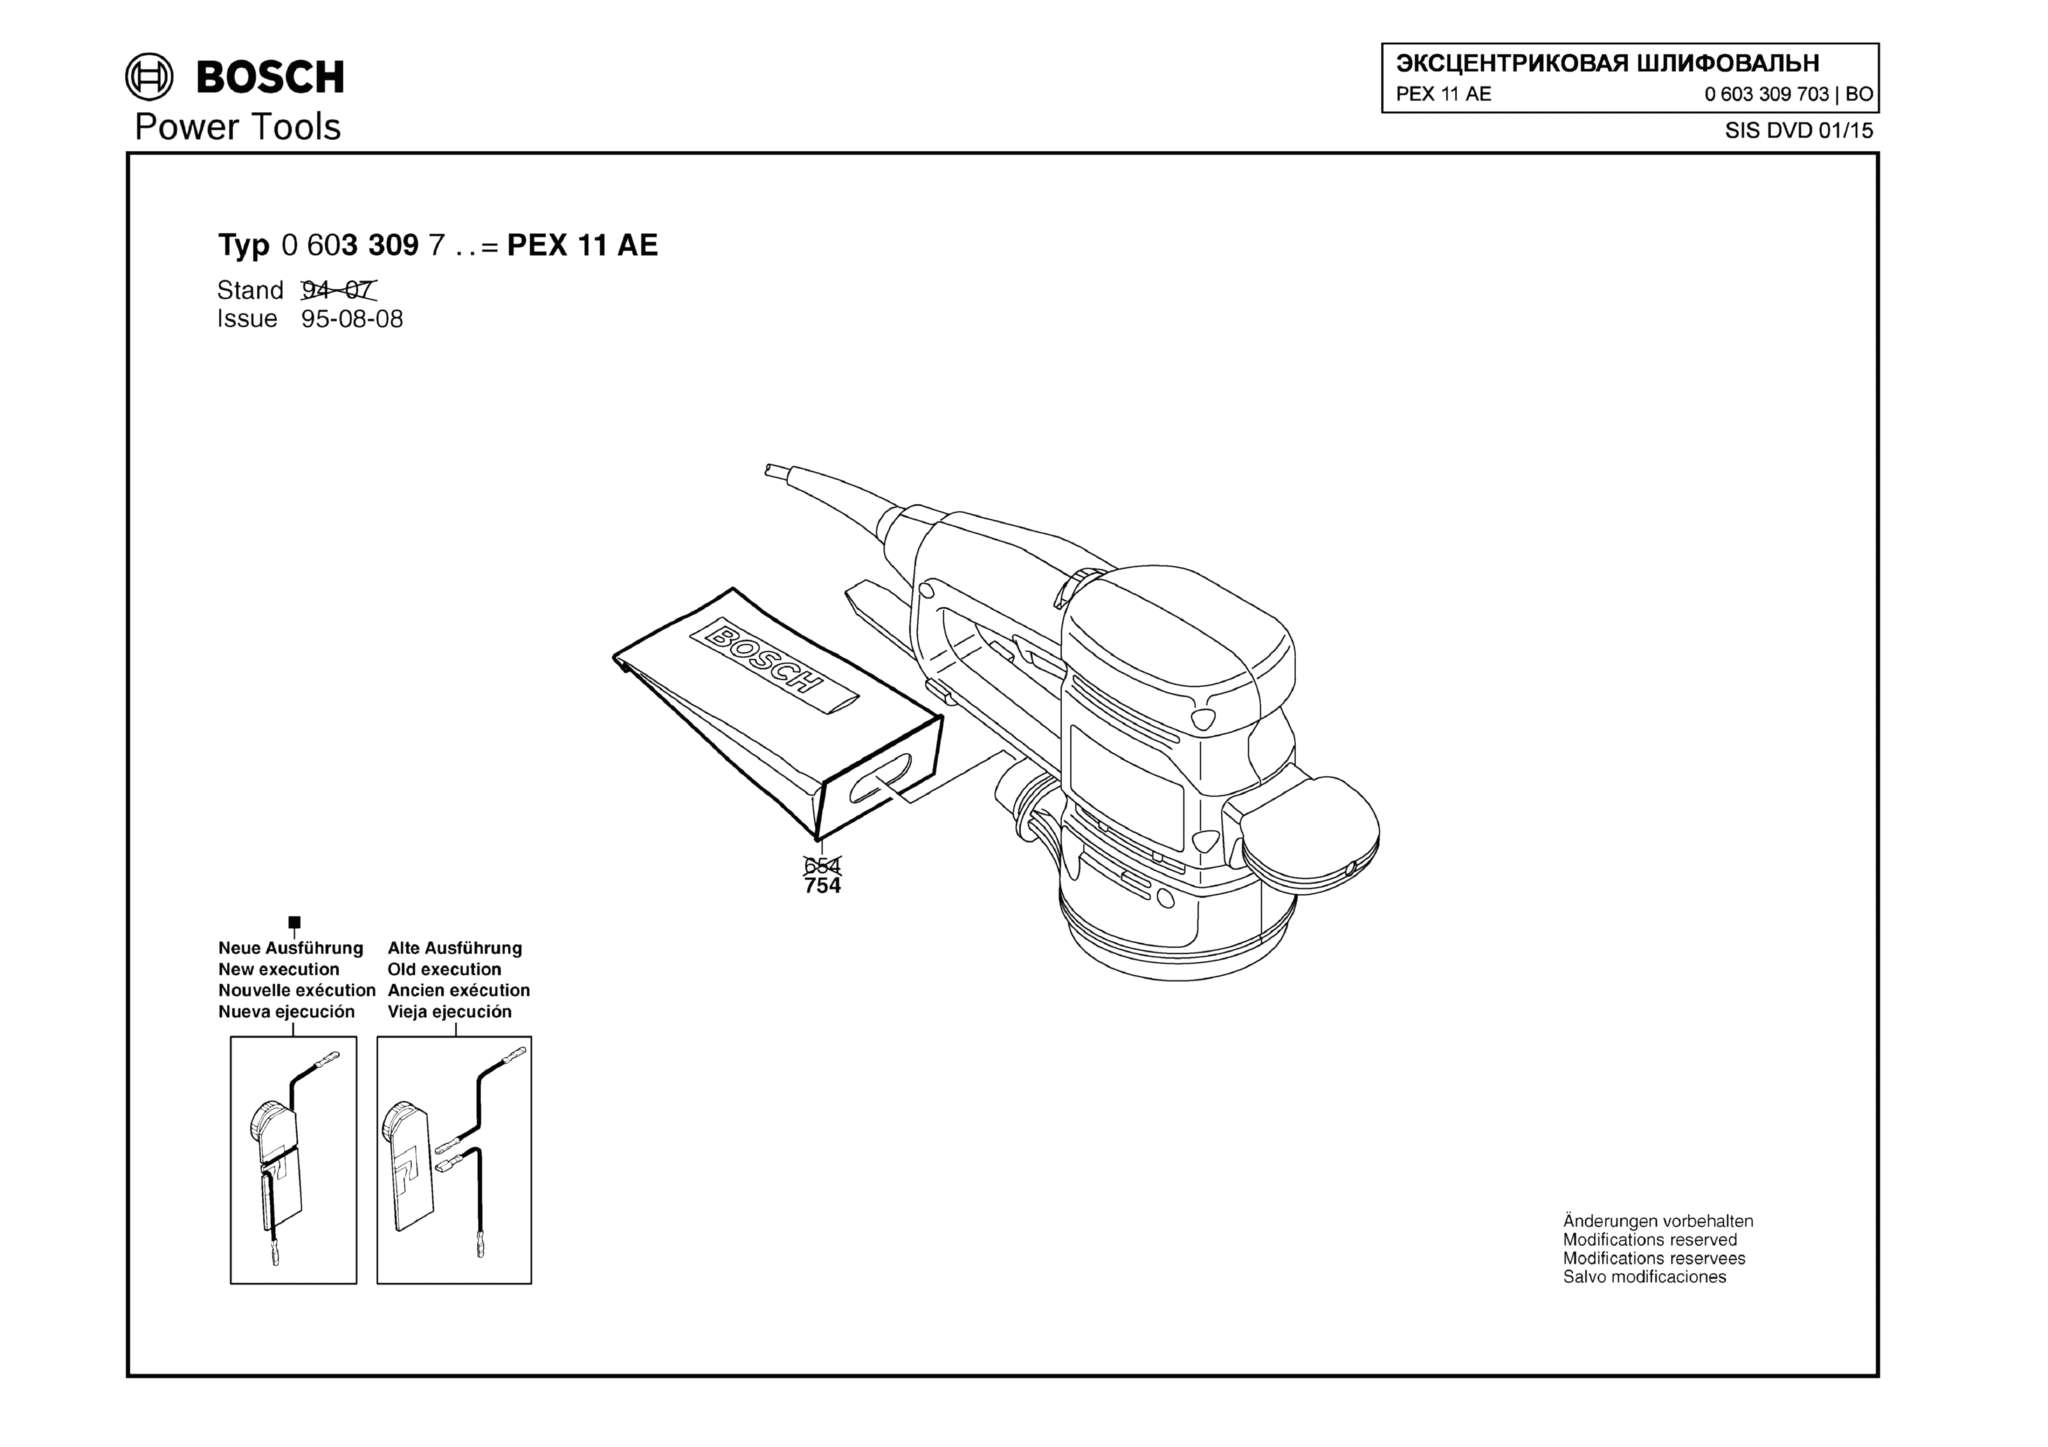 Запчасти, схема и деталировка Bosch PEX 11 AE (ТИП 0603309708) (ЧАСТЬ 2)